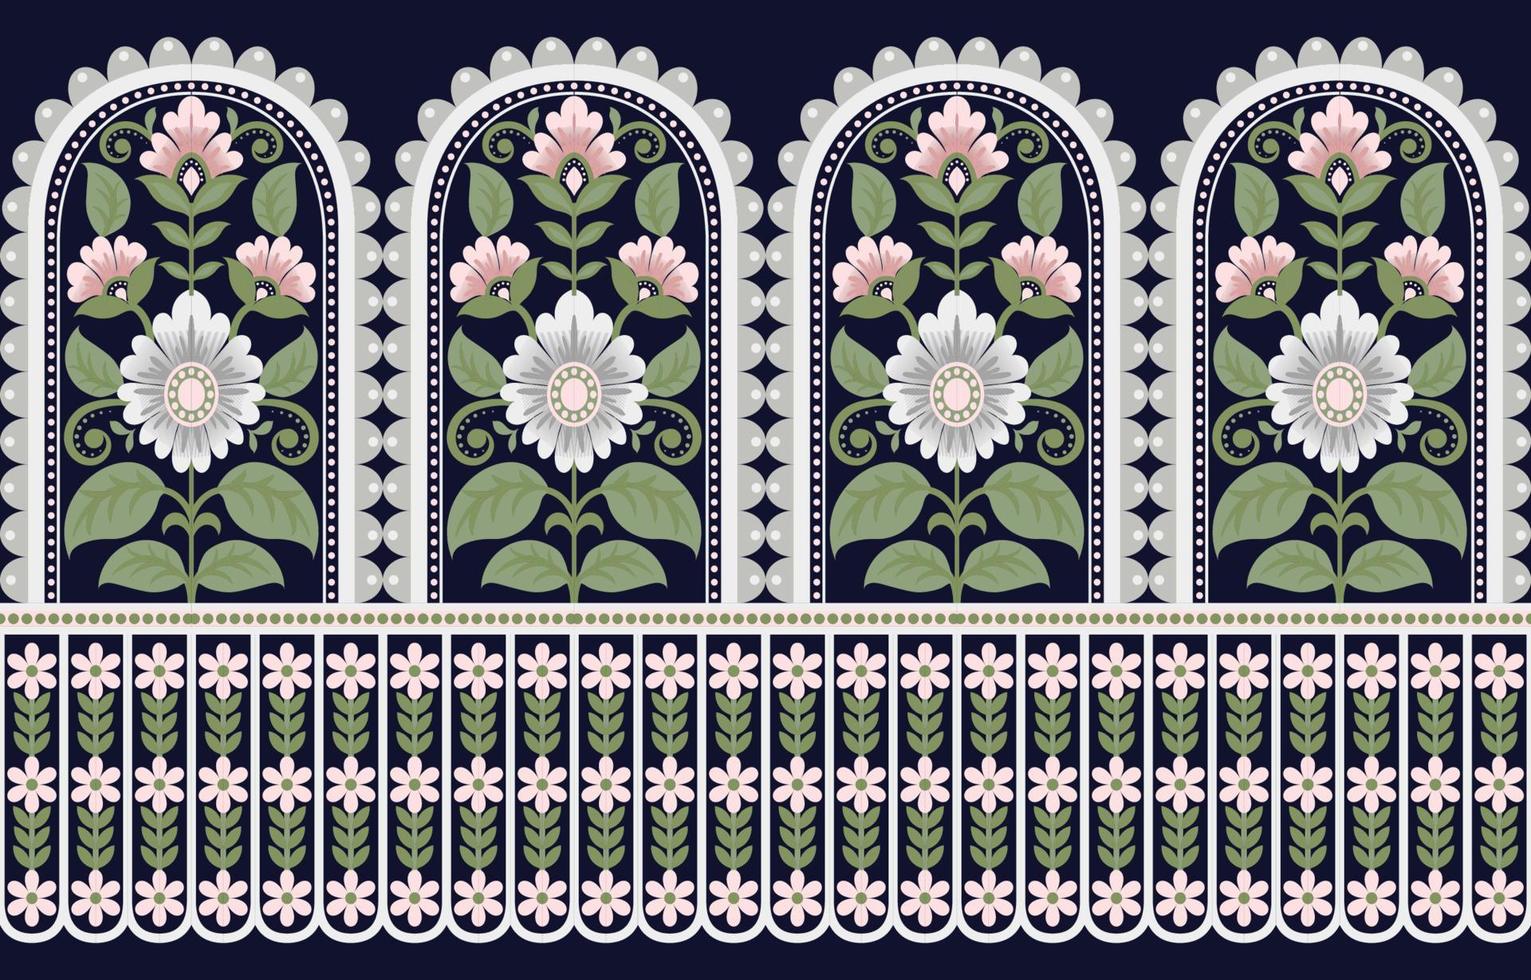 diseño tradicional geométrico étnico oriental para fondo, alfombra, papel pintado, ropa, envoltura, batik, tela, estilo de bordado de ilustración vectorial. vector